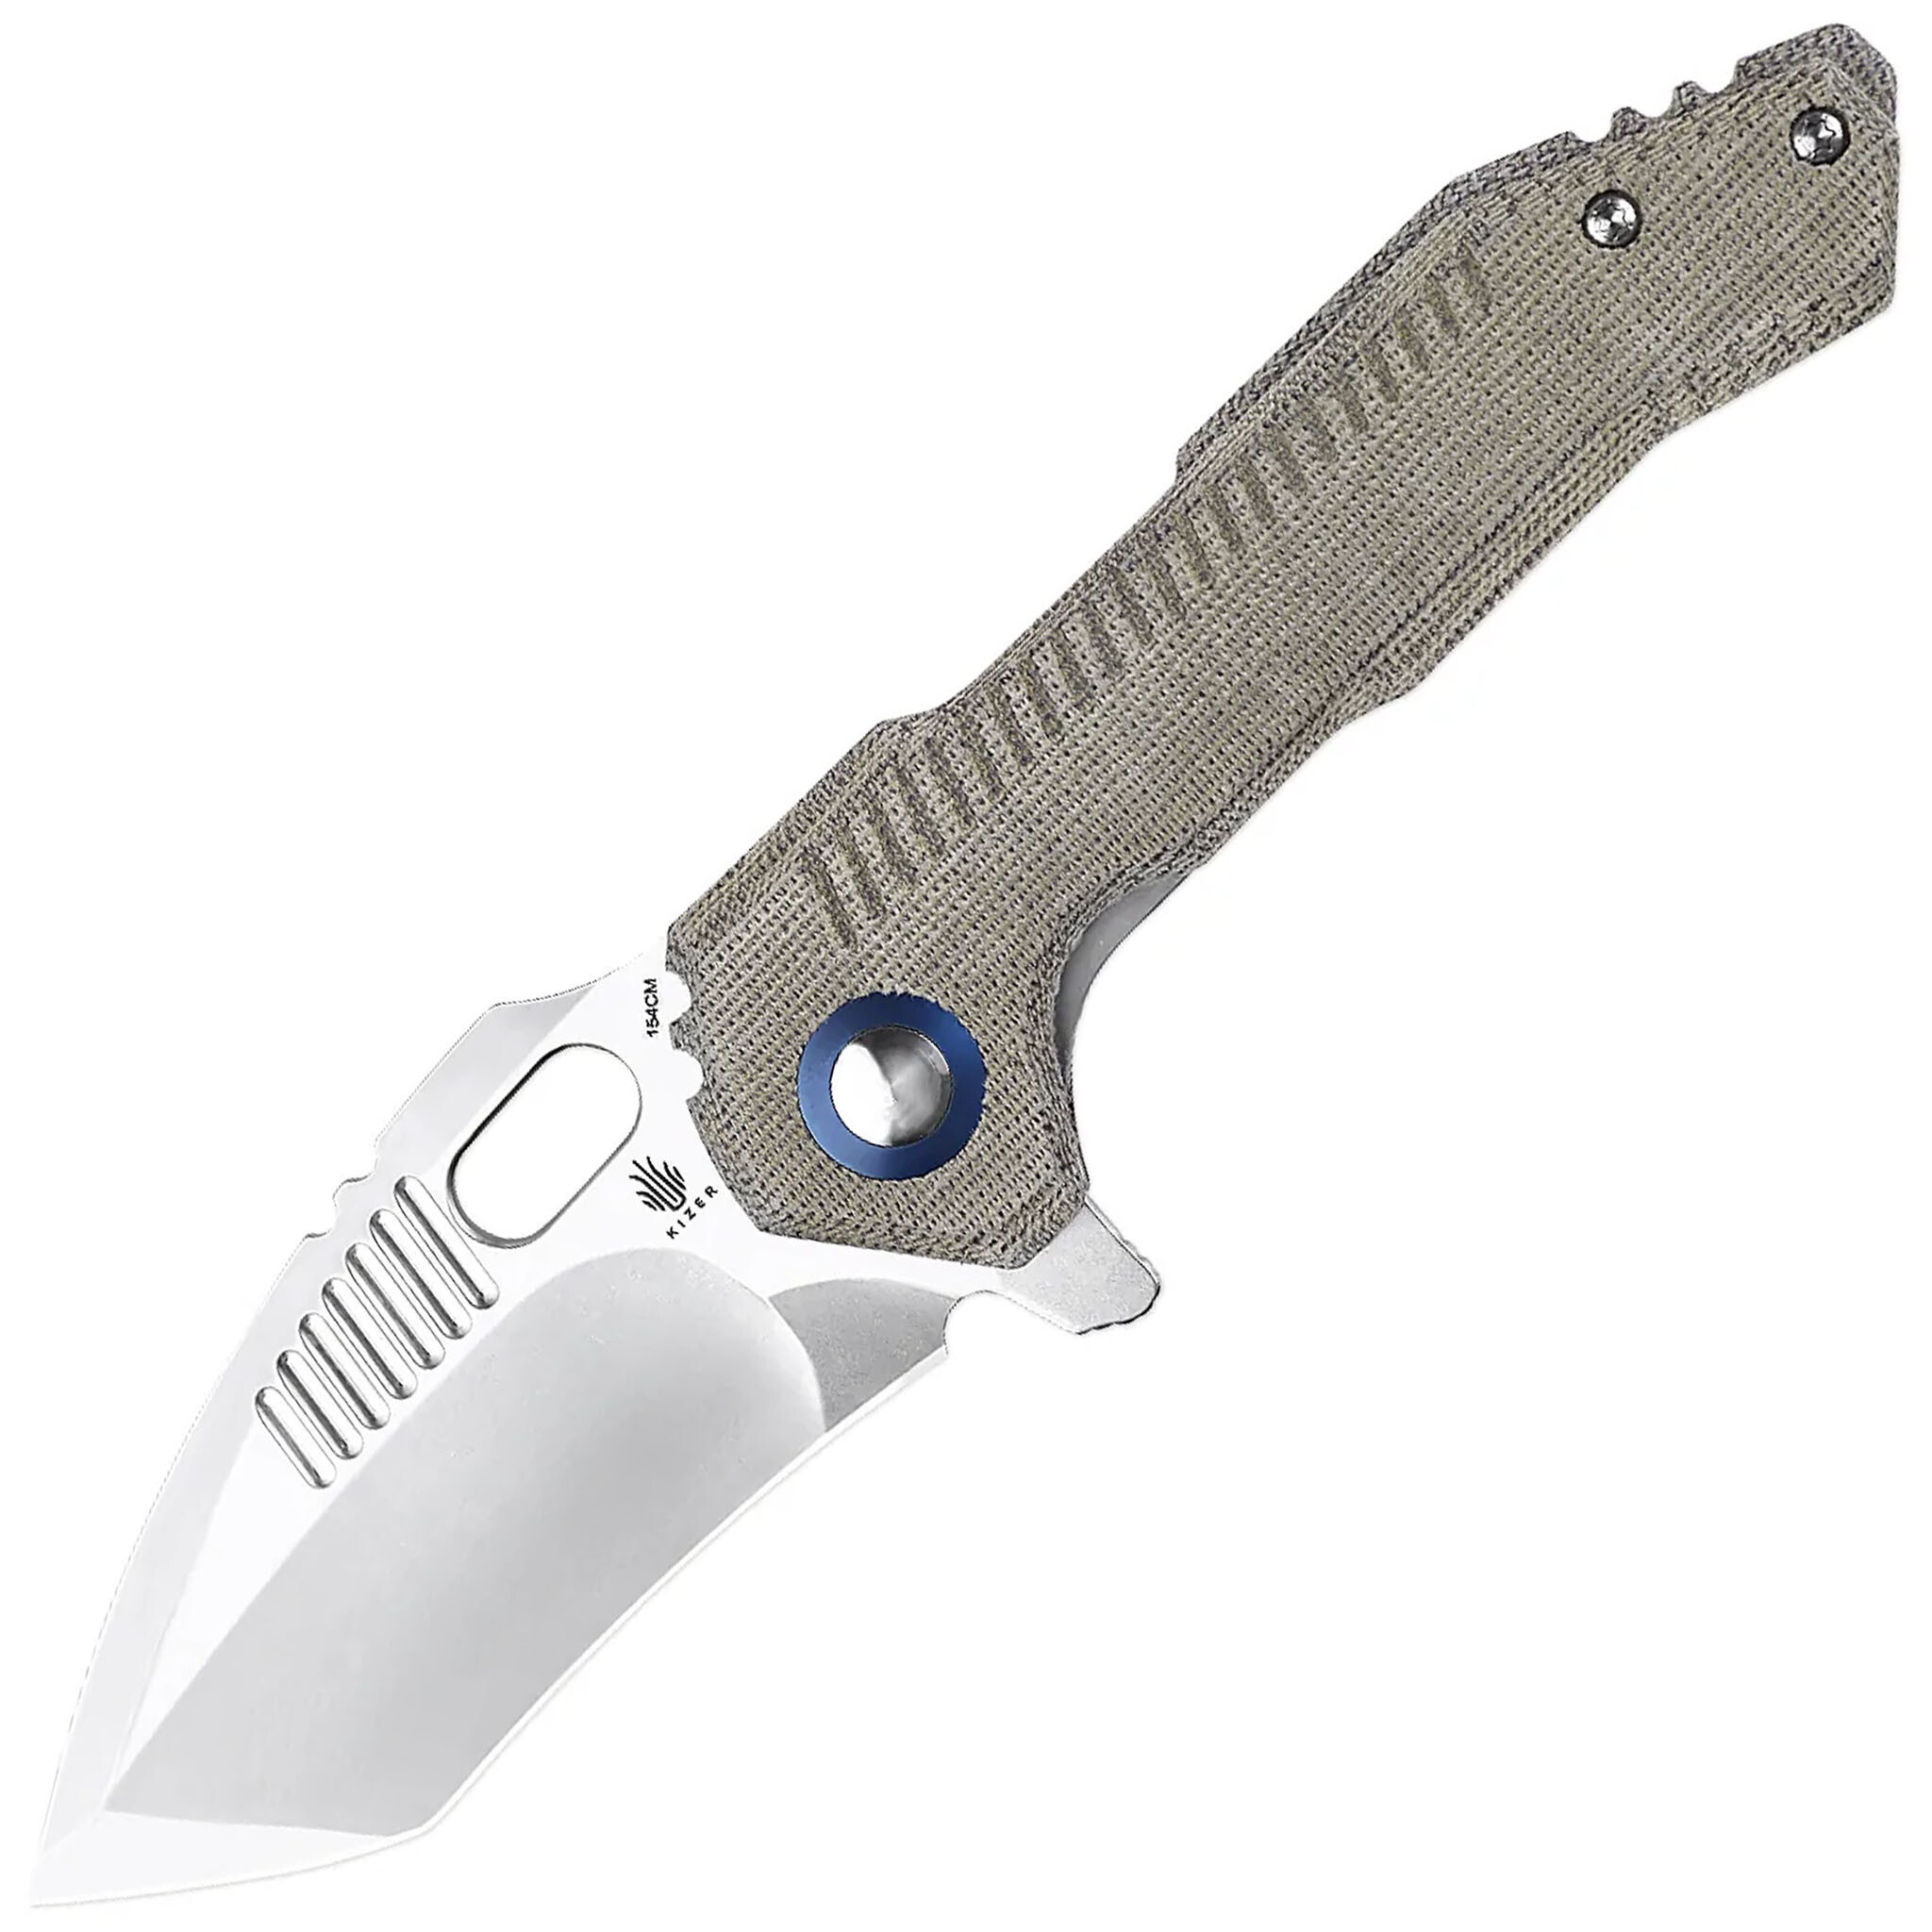 Складной нож Kizer Mini Paragon Satin, сталь 154CM, рукоять микарта мангал складной grillux optimus stainless из нержавеющей стали